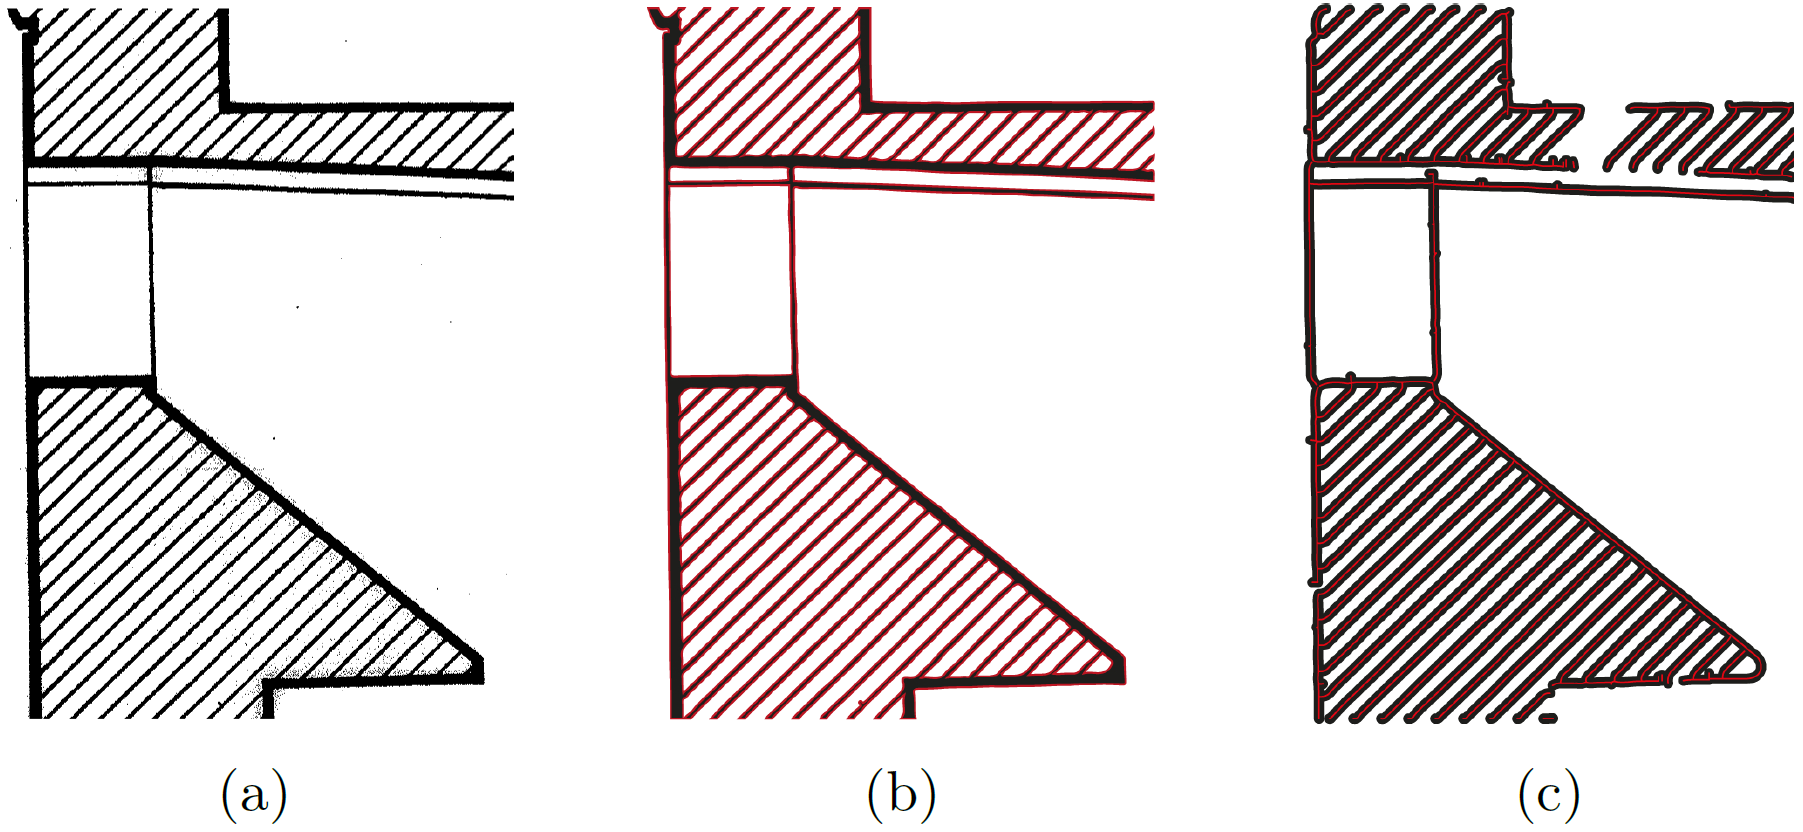 Ausschnitt eines Grundrisses (a) als Rastergrafik mit geringer Auflösung, (b) mit vektorisierten Flächen und (c) mit vektorisierten Mittellinien. Die Pfade sind rot dargestellt.